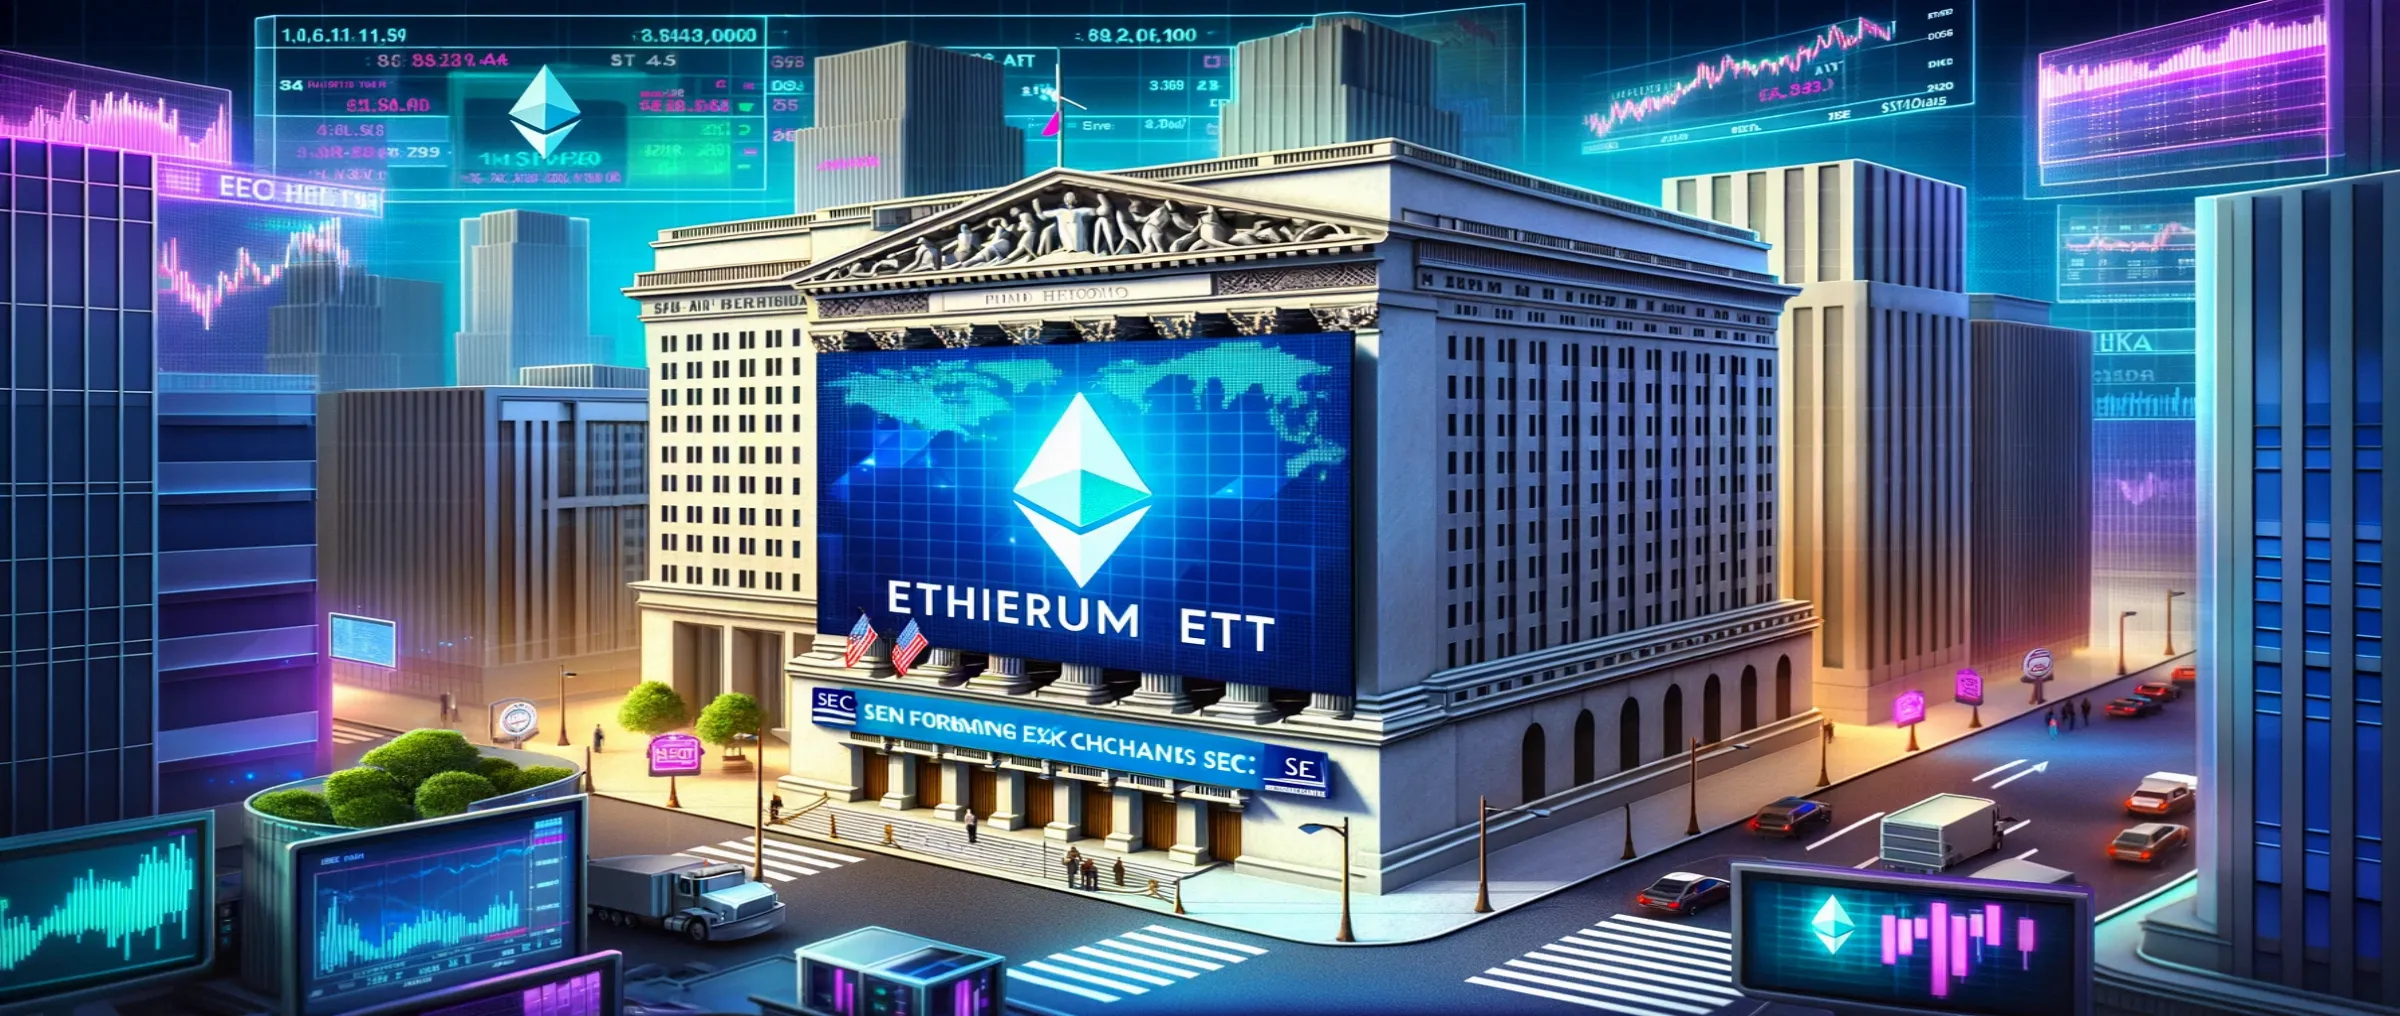 SEC уведомила биржи о потенциальном одобрении ETF на Ethereum, сообщает Barrons